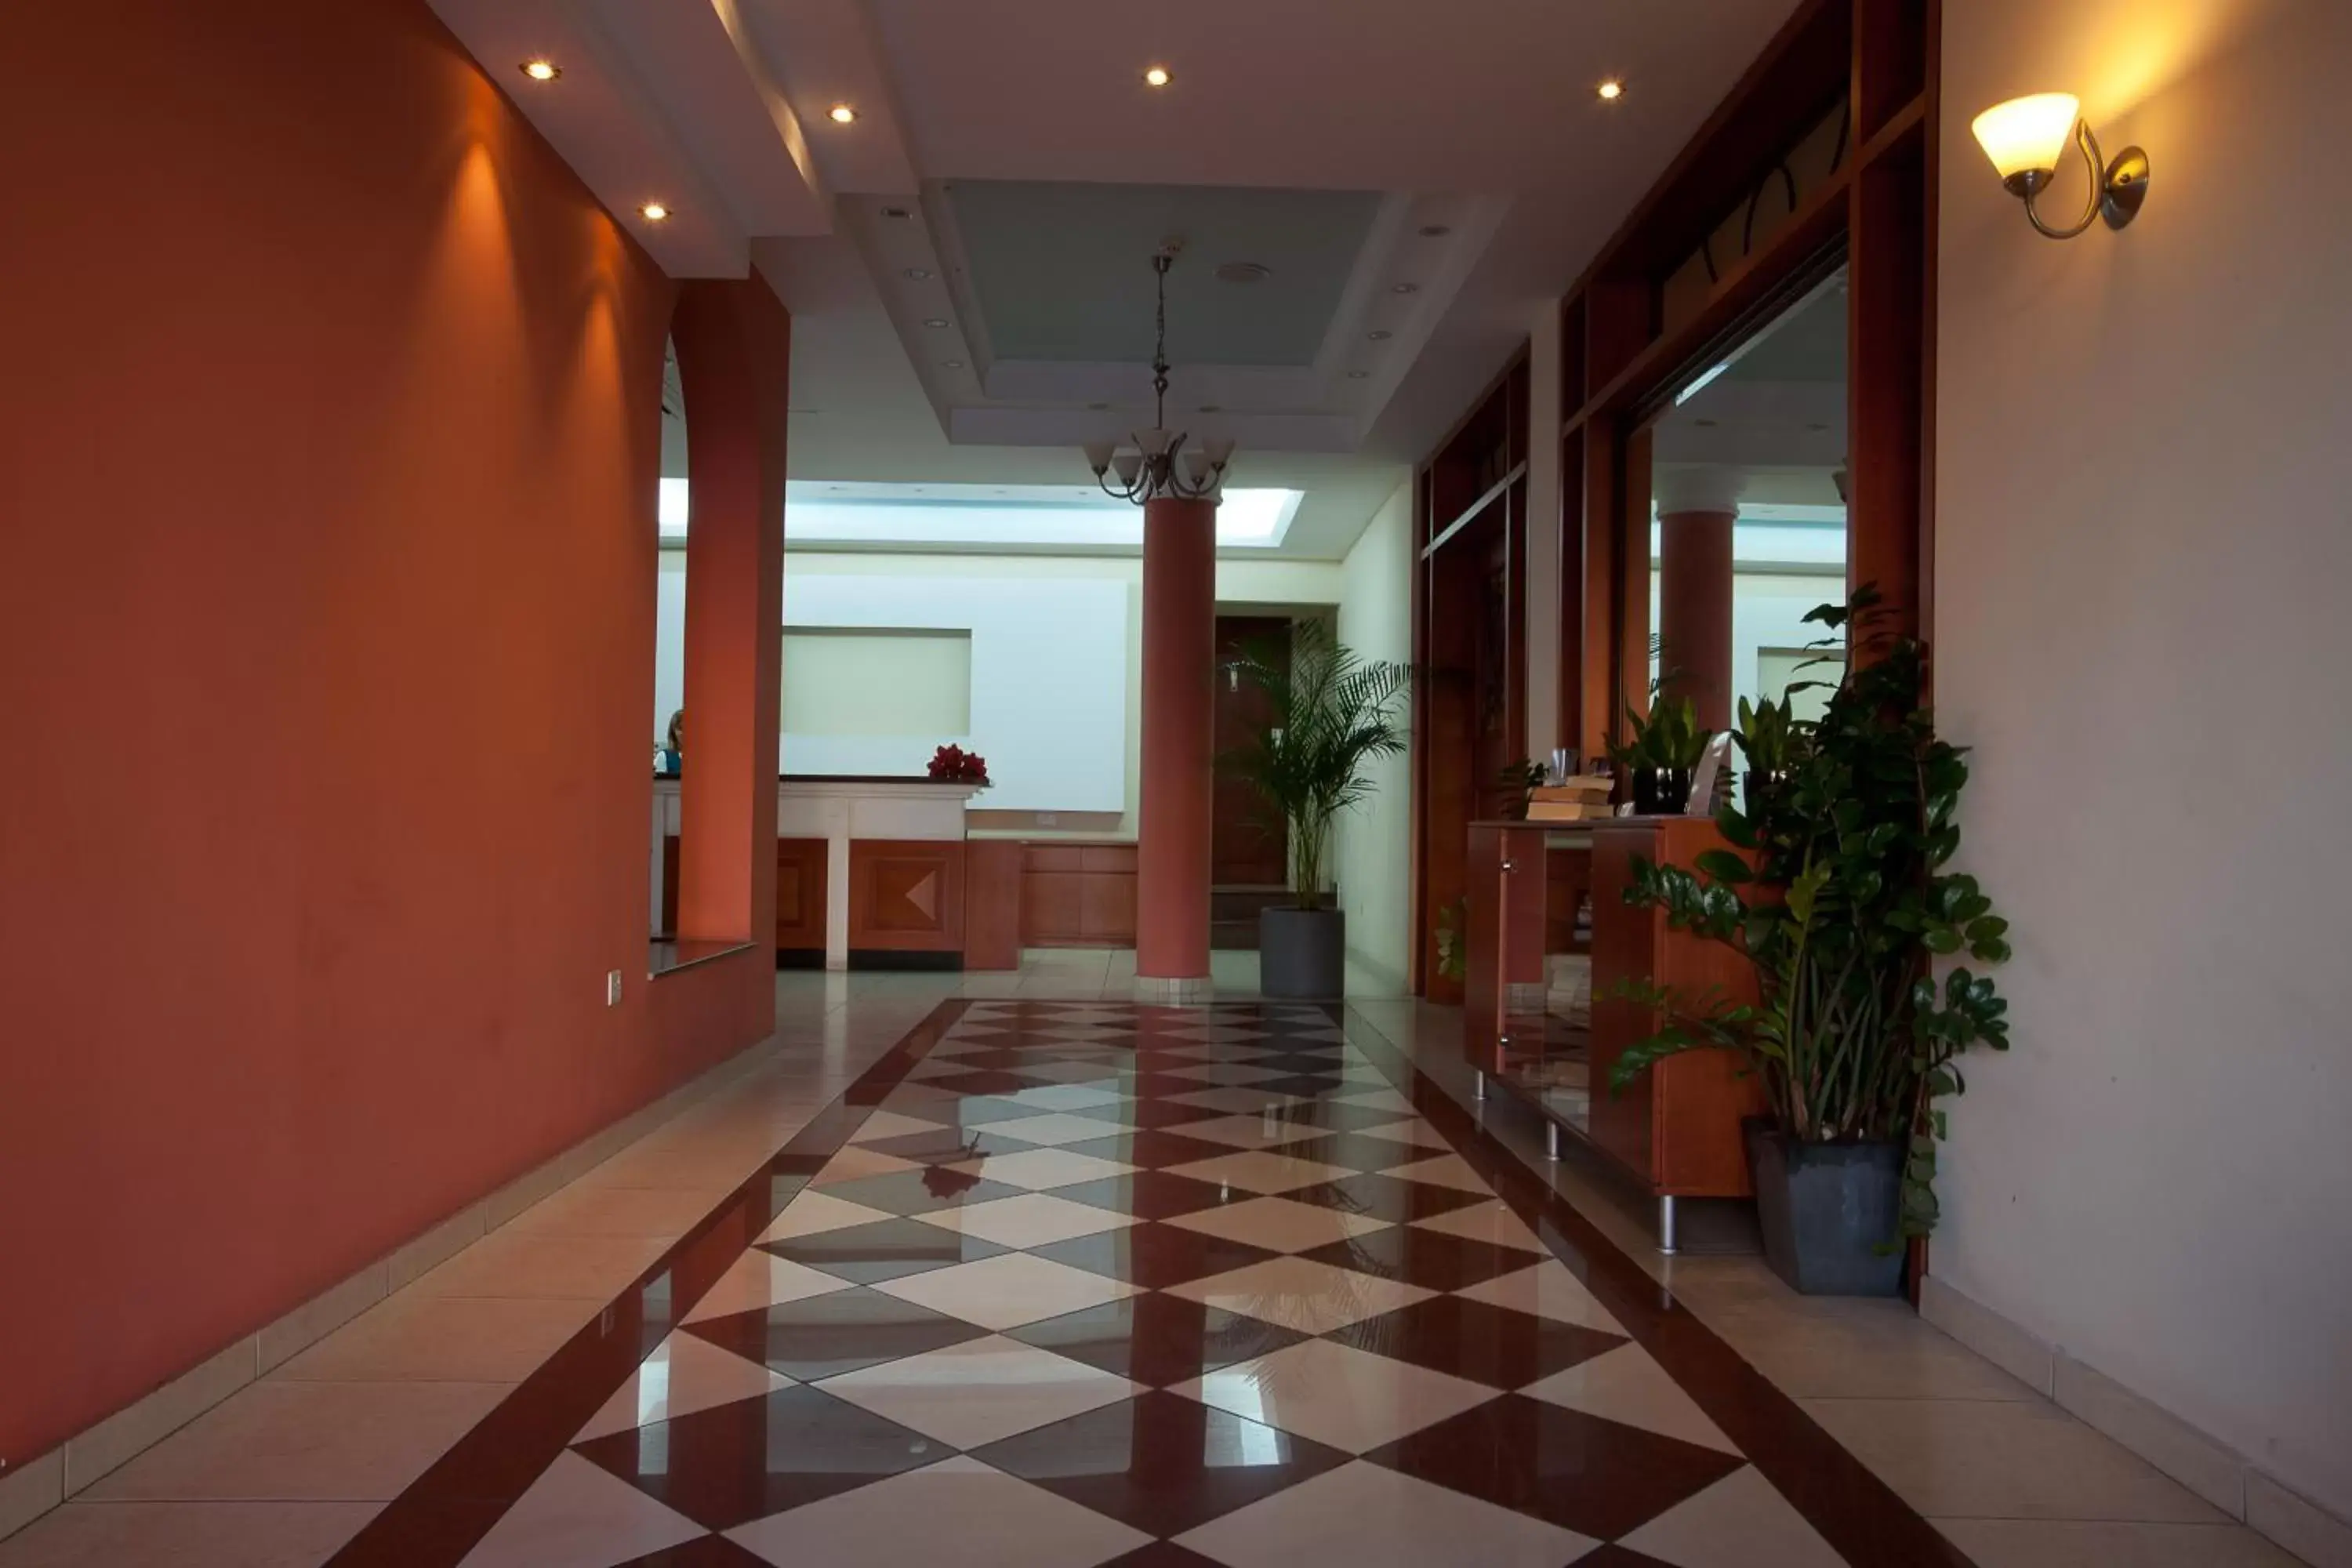 Lobby or reception in Pyramos Hotel